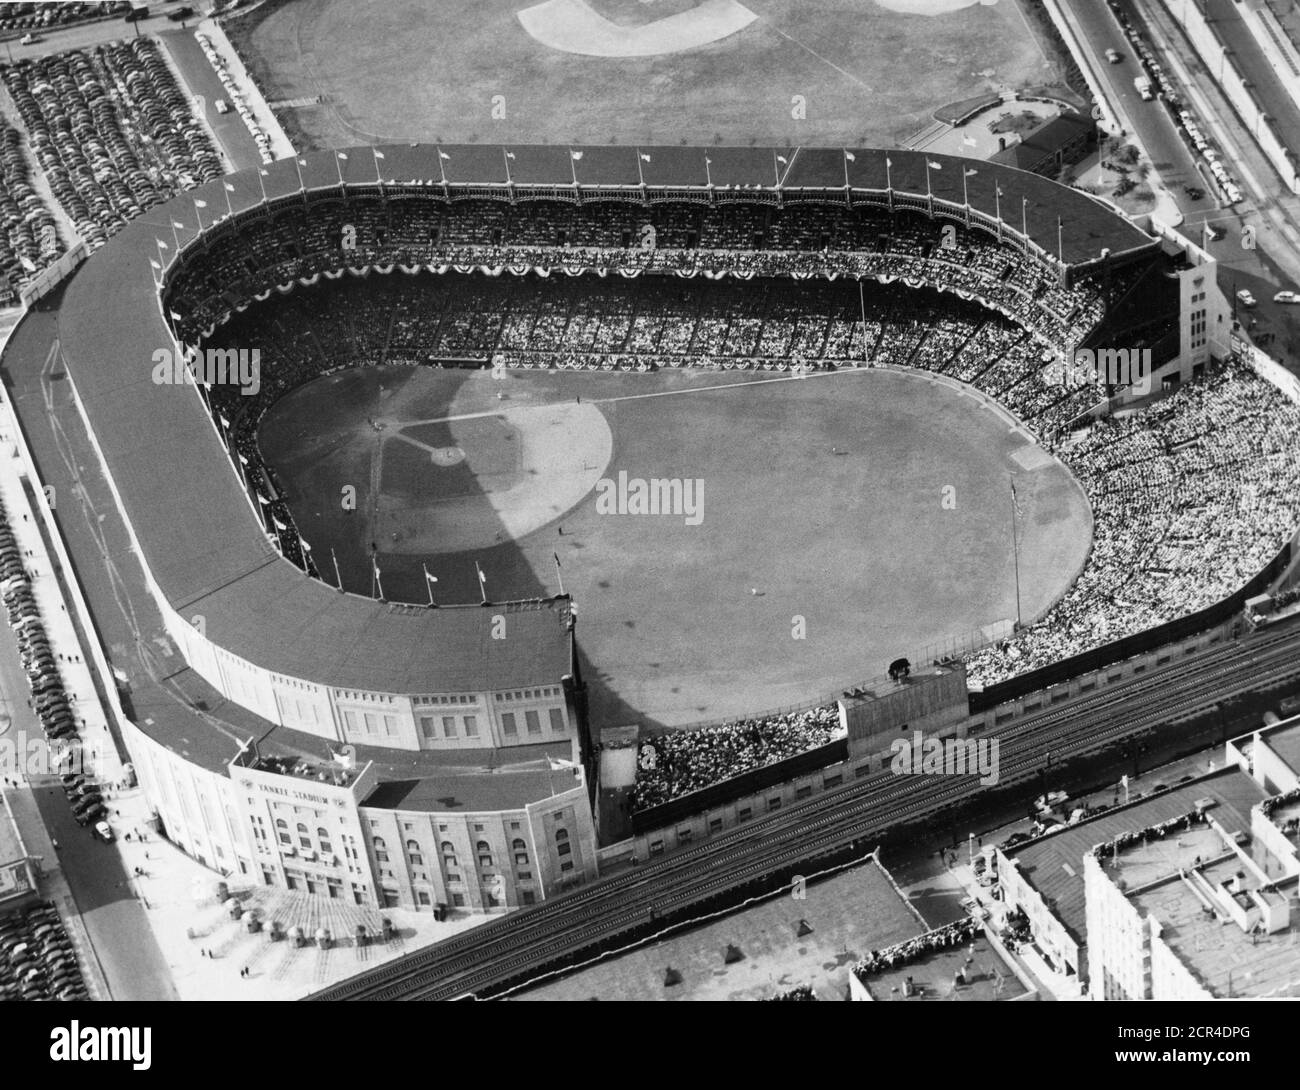 Vista aerea dello Yankee Stadium con un pubblico pieno di capacità durante una partita di baseball, New York, NY, 1954. (Foto di RBM Vintage Images) Foto Stock